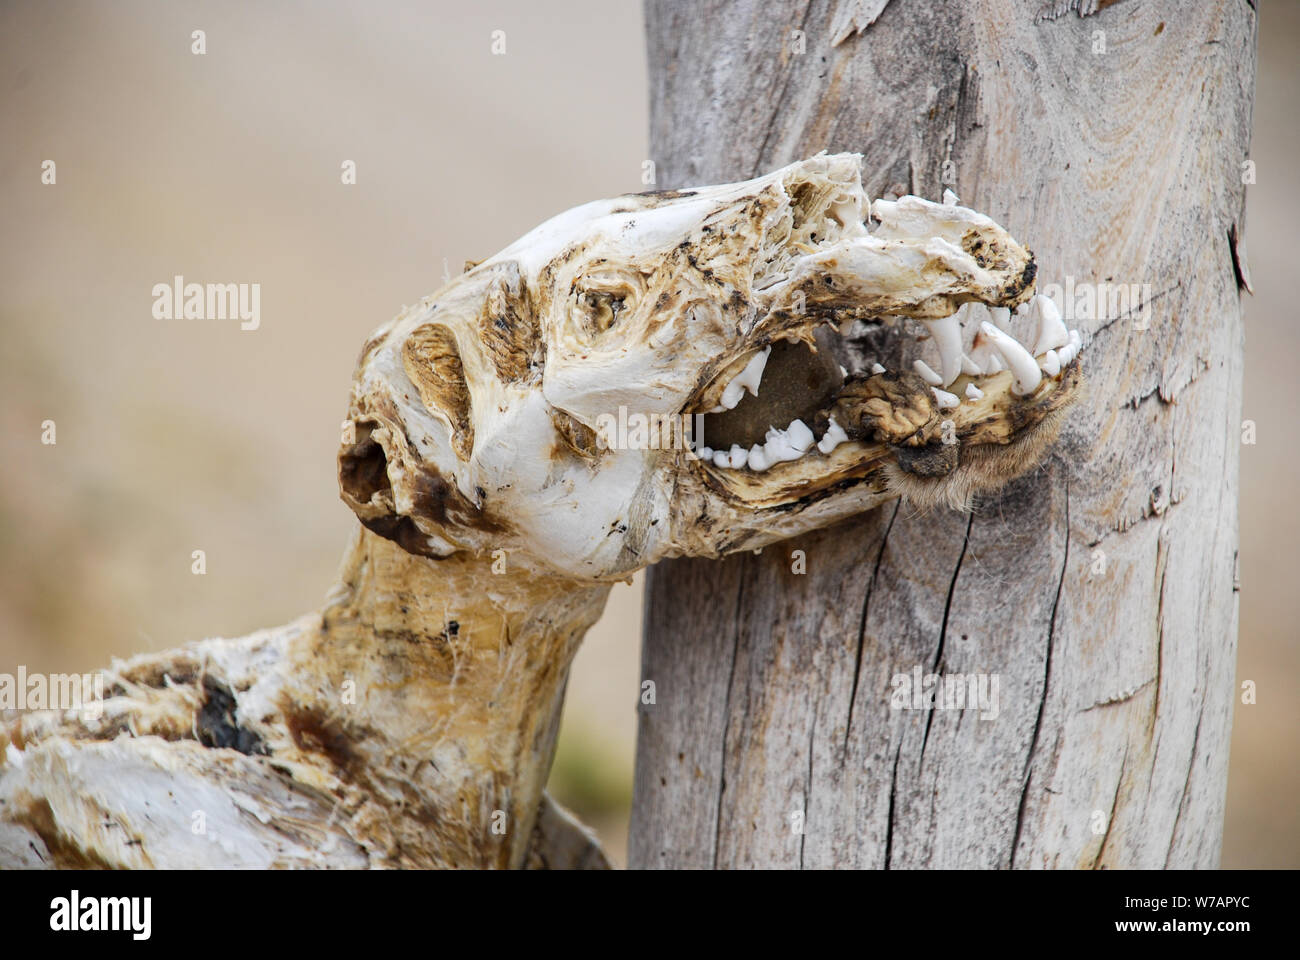 Los huesos del esqueleto de un animal muerto colgado en la puerta de un borde o valla o cableada en una ruta rural meridional argentina Foto de stock